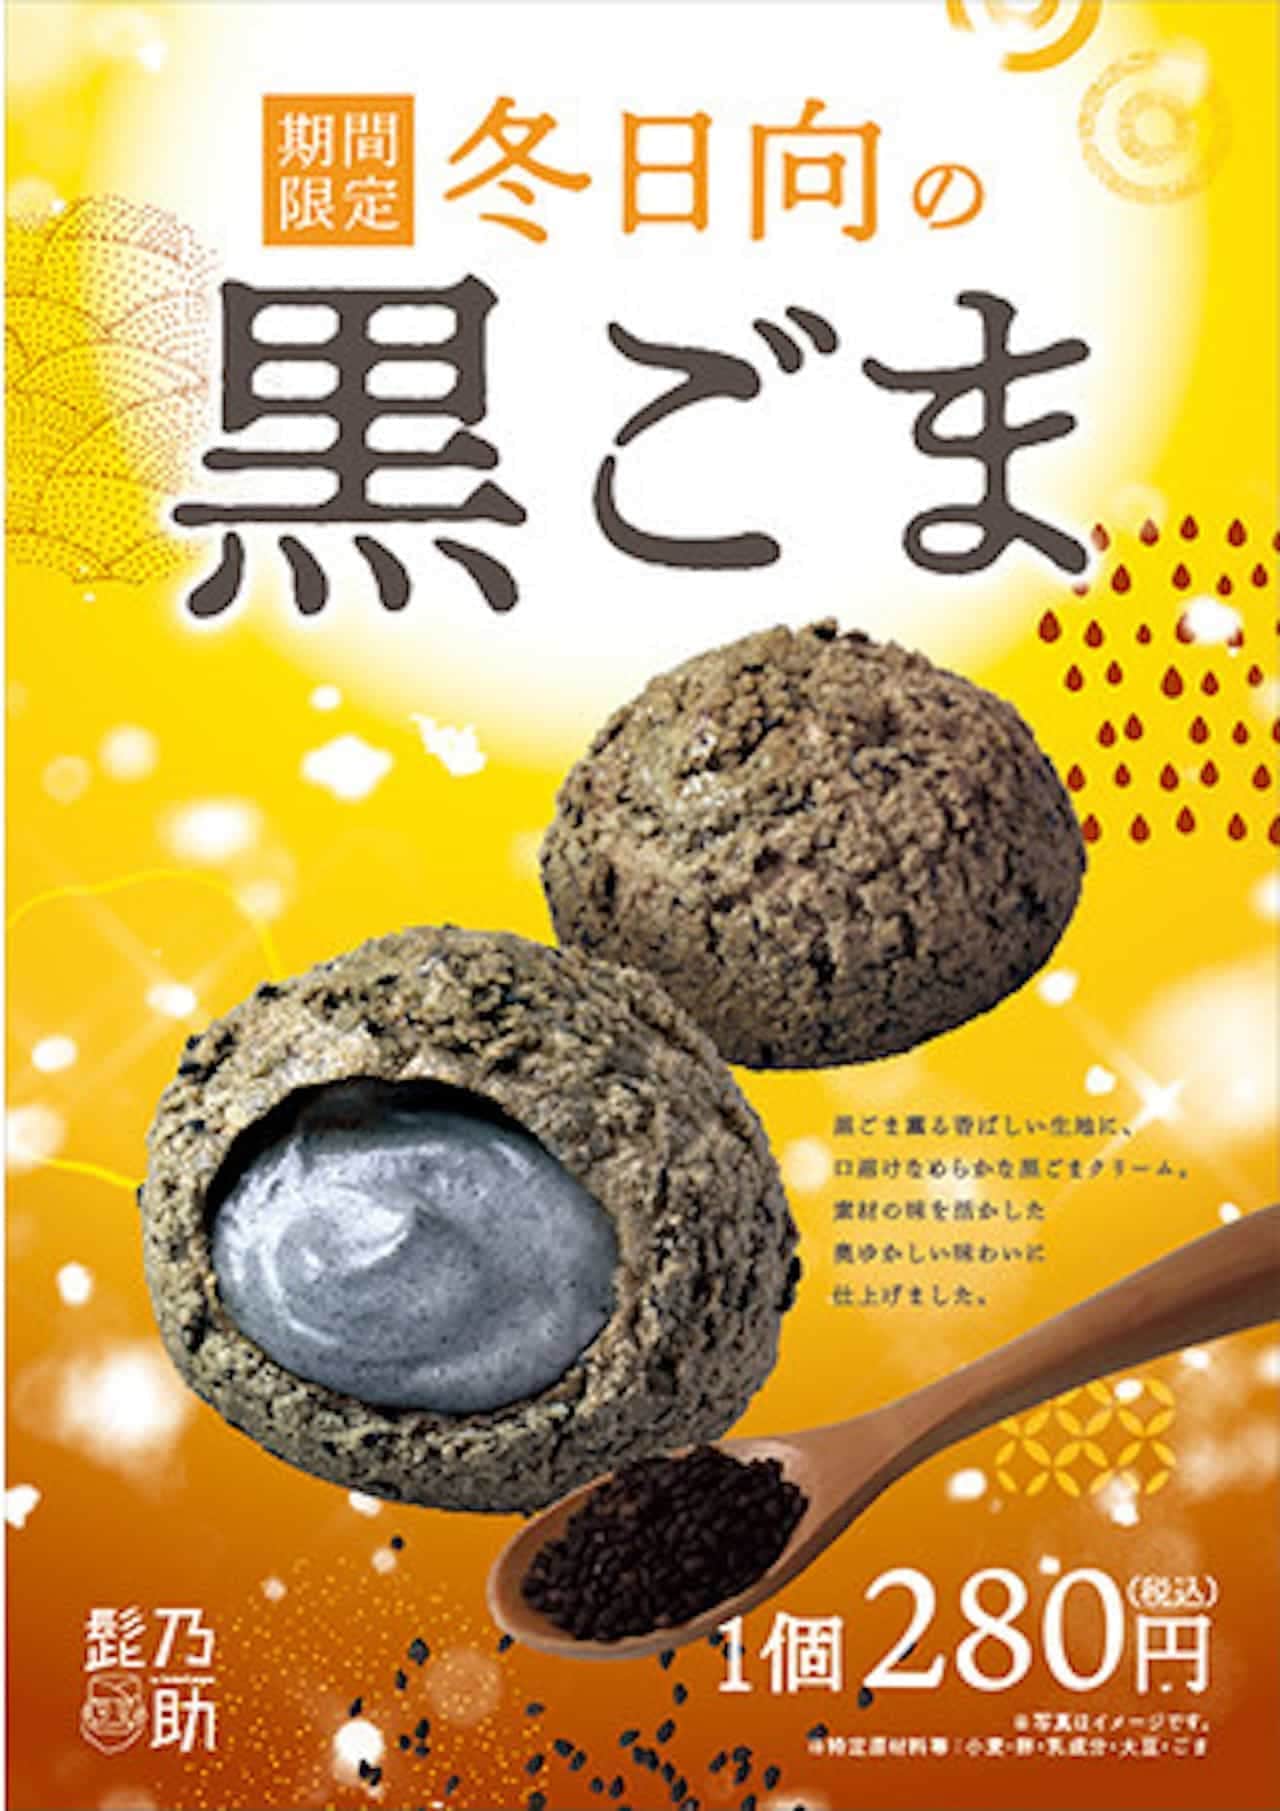 Higenosuke "Black sesame seeds in winter"